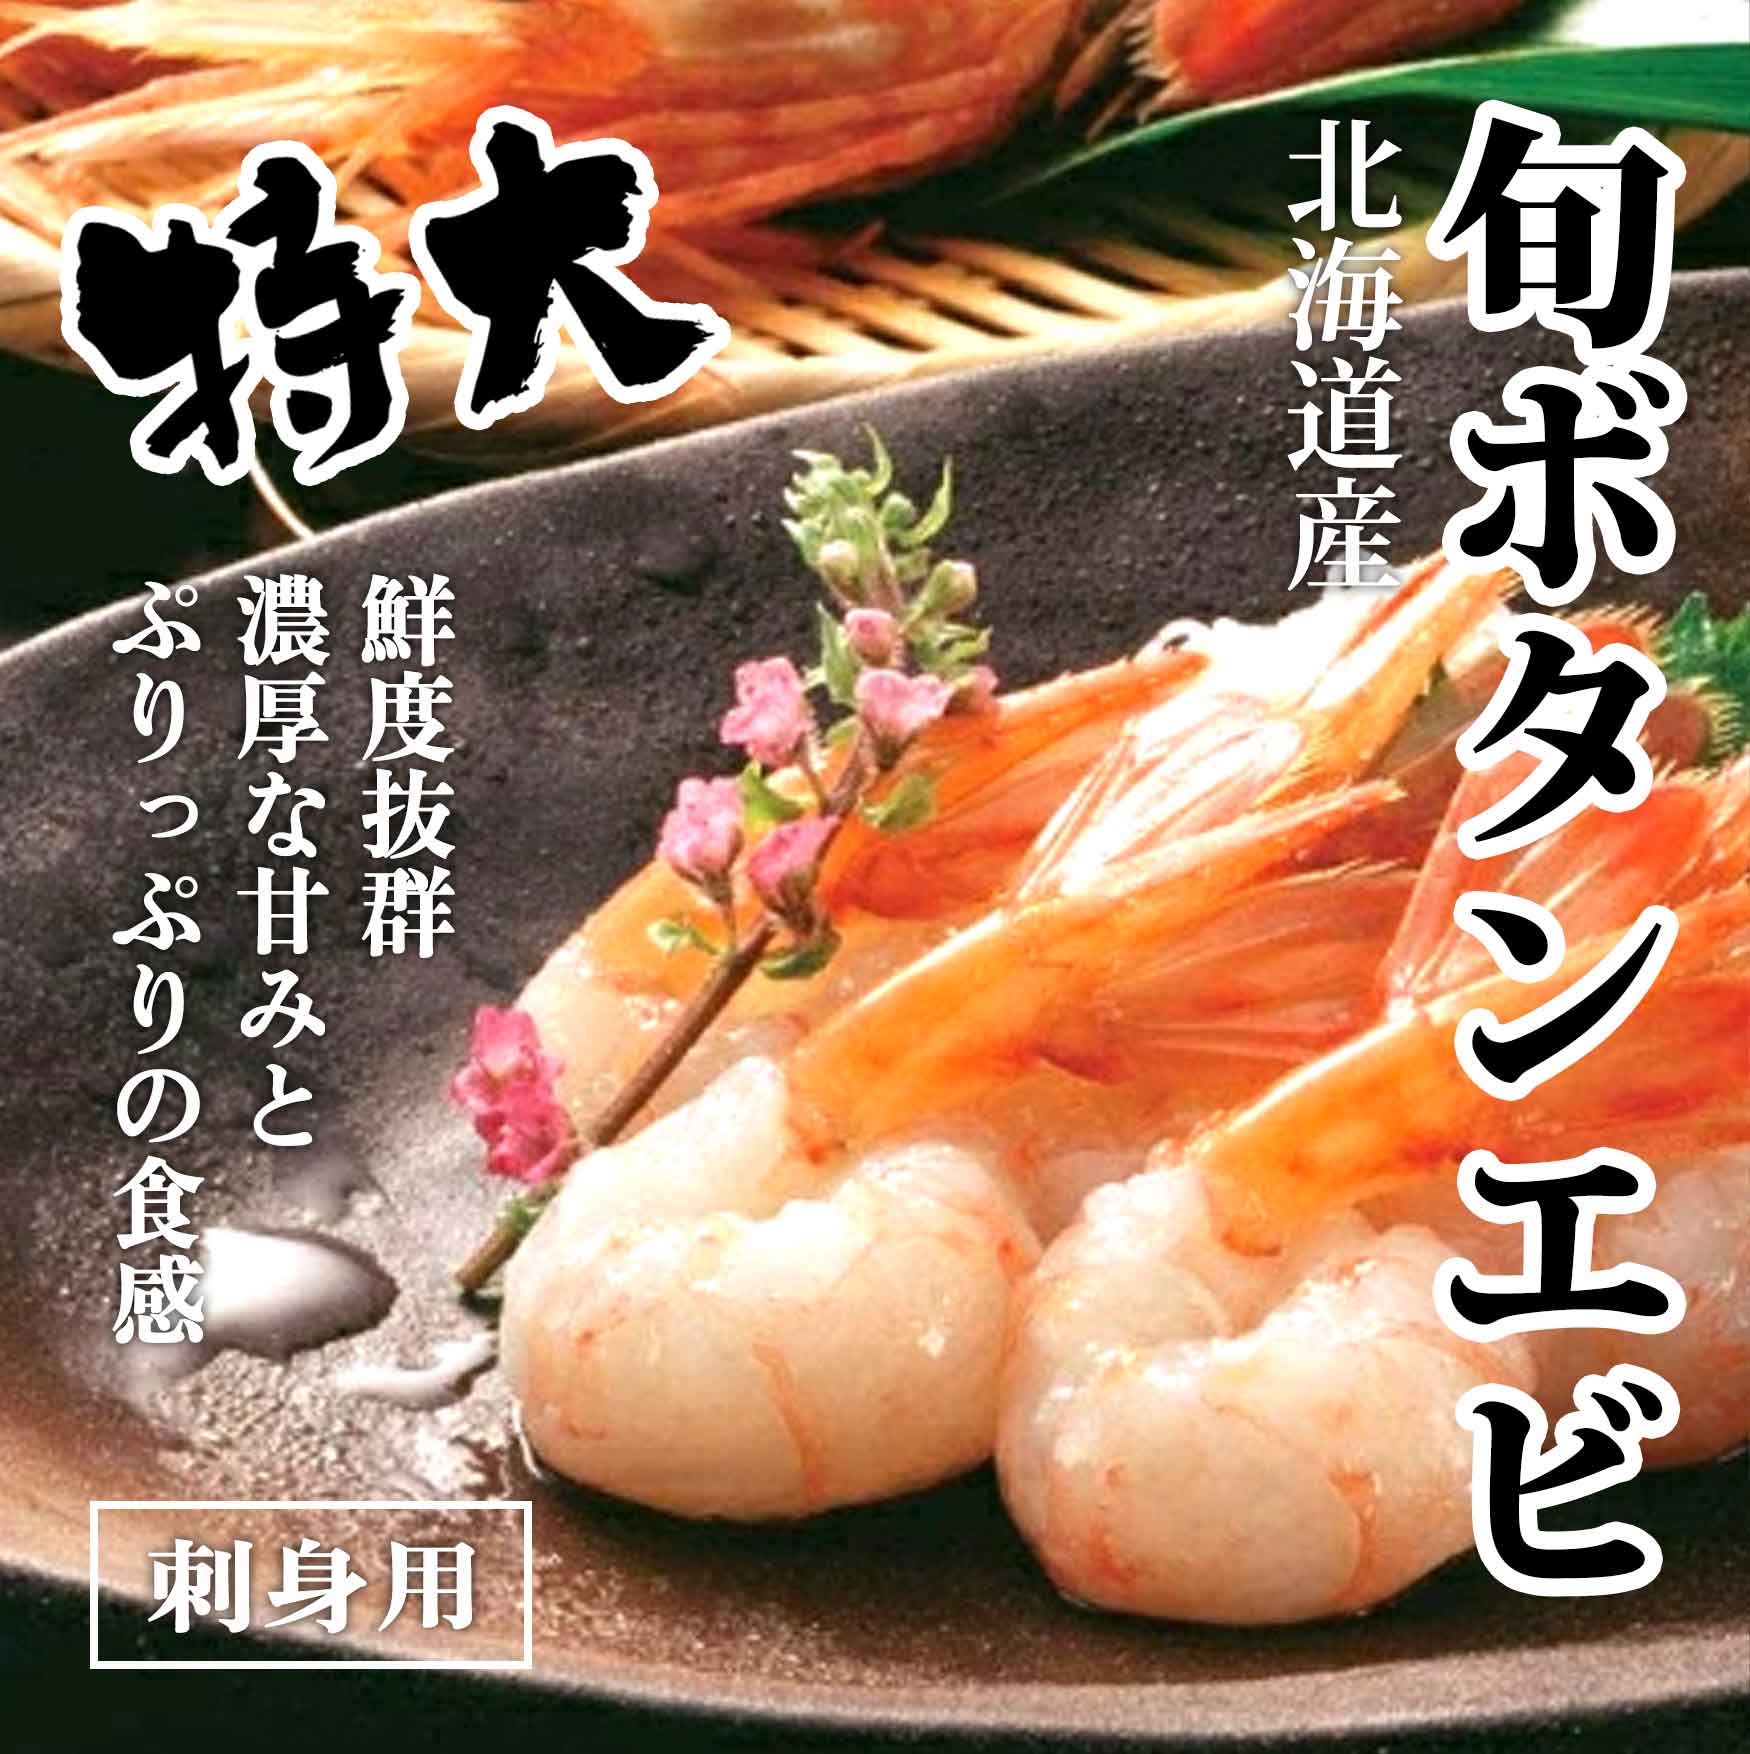 刺身用ボタンエビ 海鮮お取り寄せ通販 北海道ふるさと水産